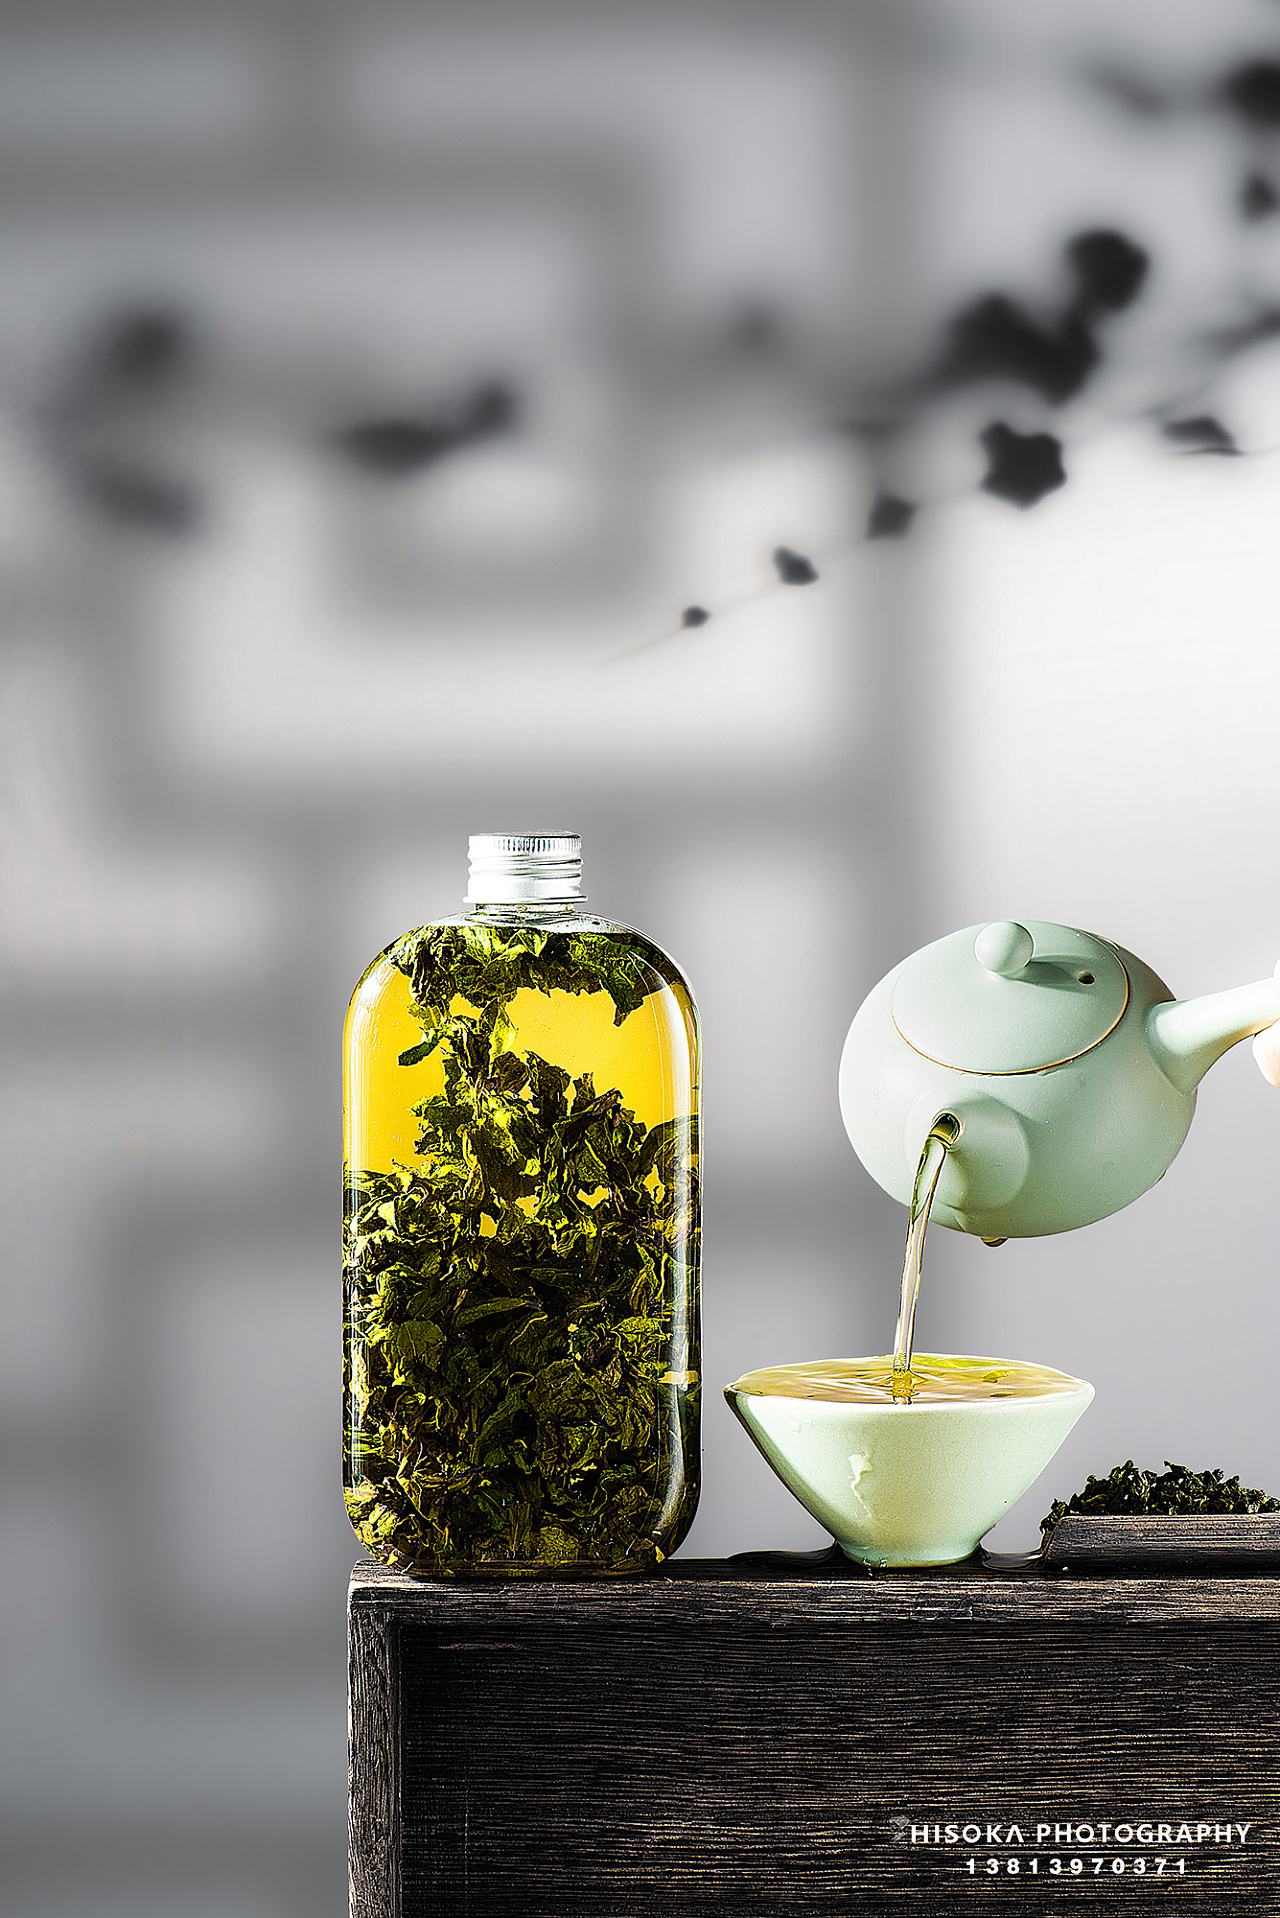 枸杞拿铁、罗汉果美式......养生的功能茶成了茶饮新宠 | CBNData